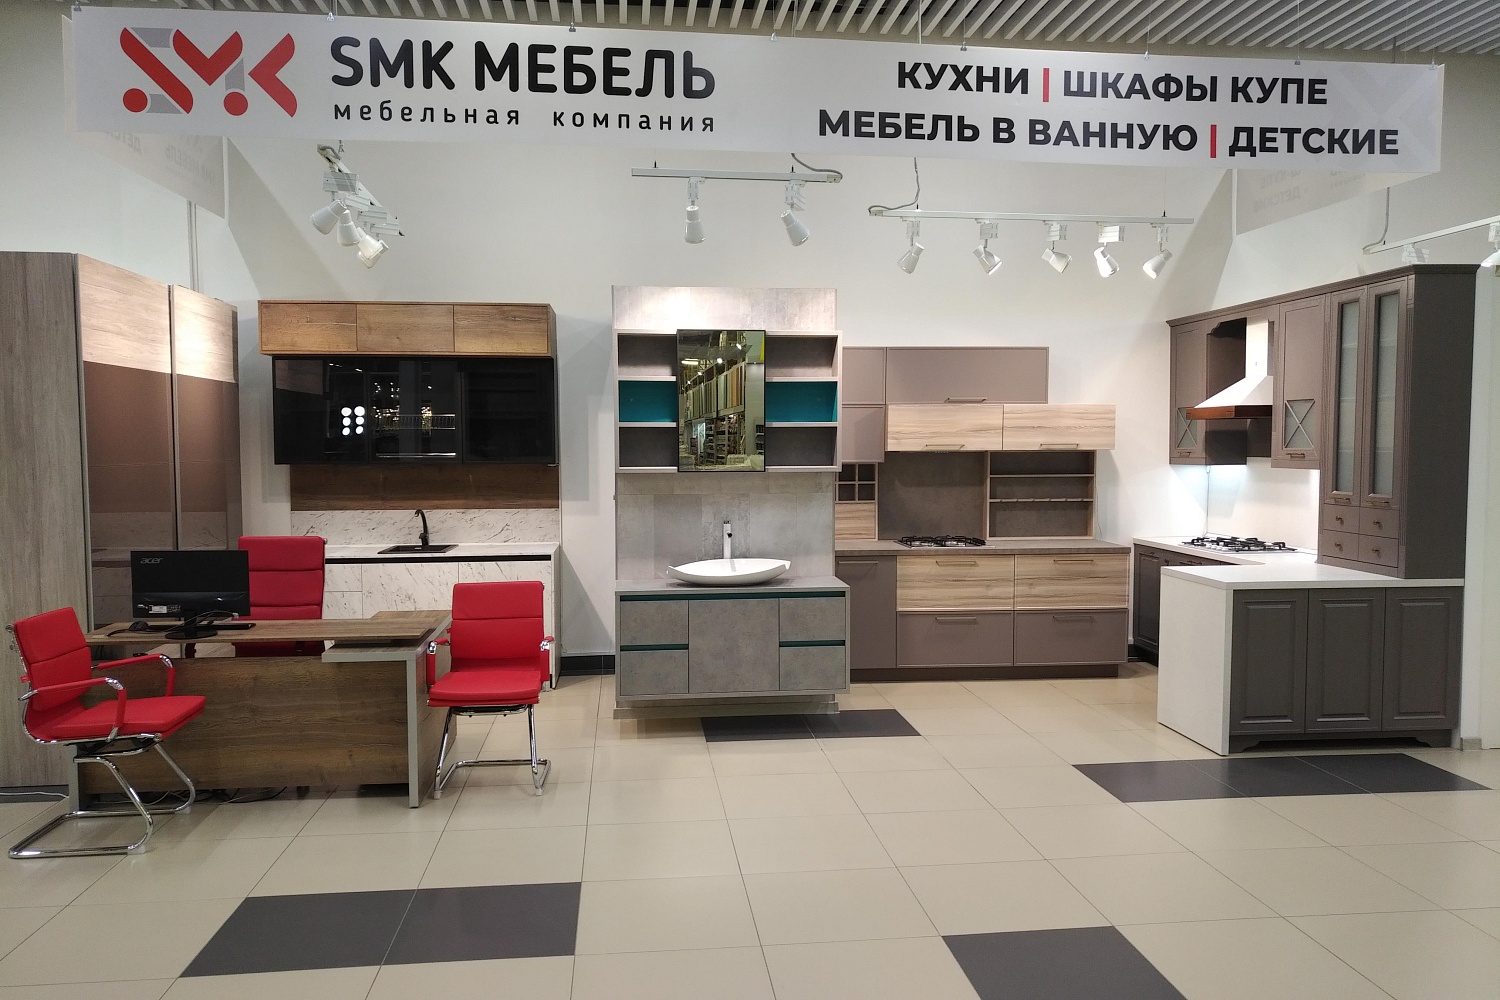 Открыта новая студия SMK в ТЦ HAPPY МОЛЛ